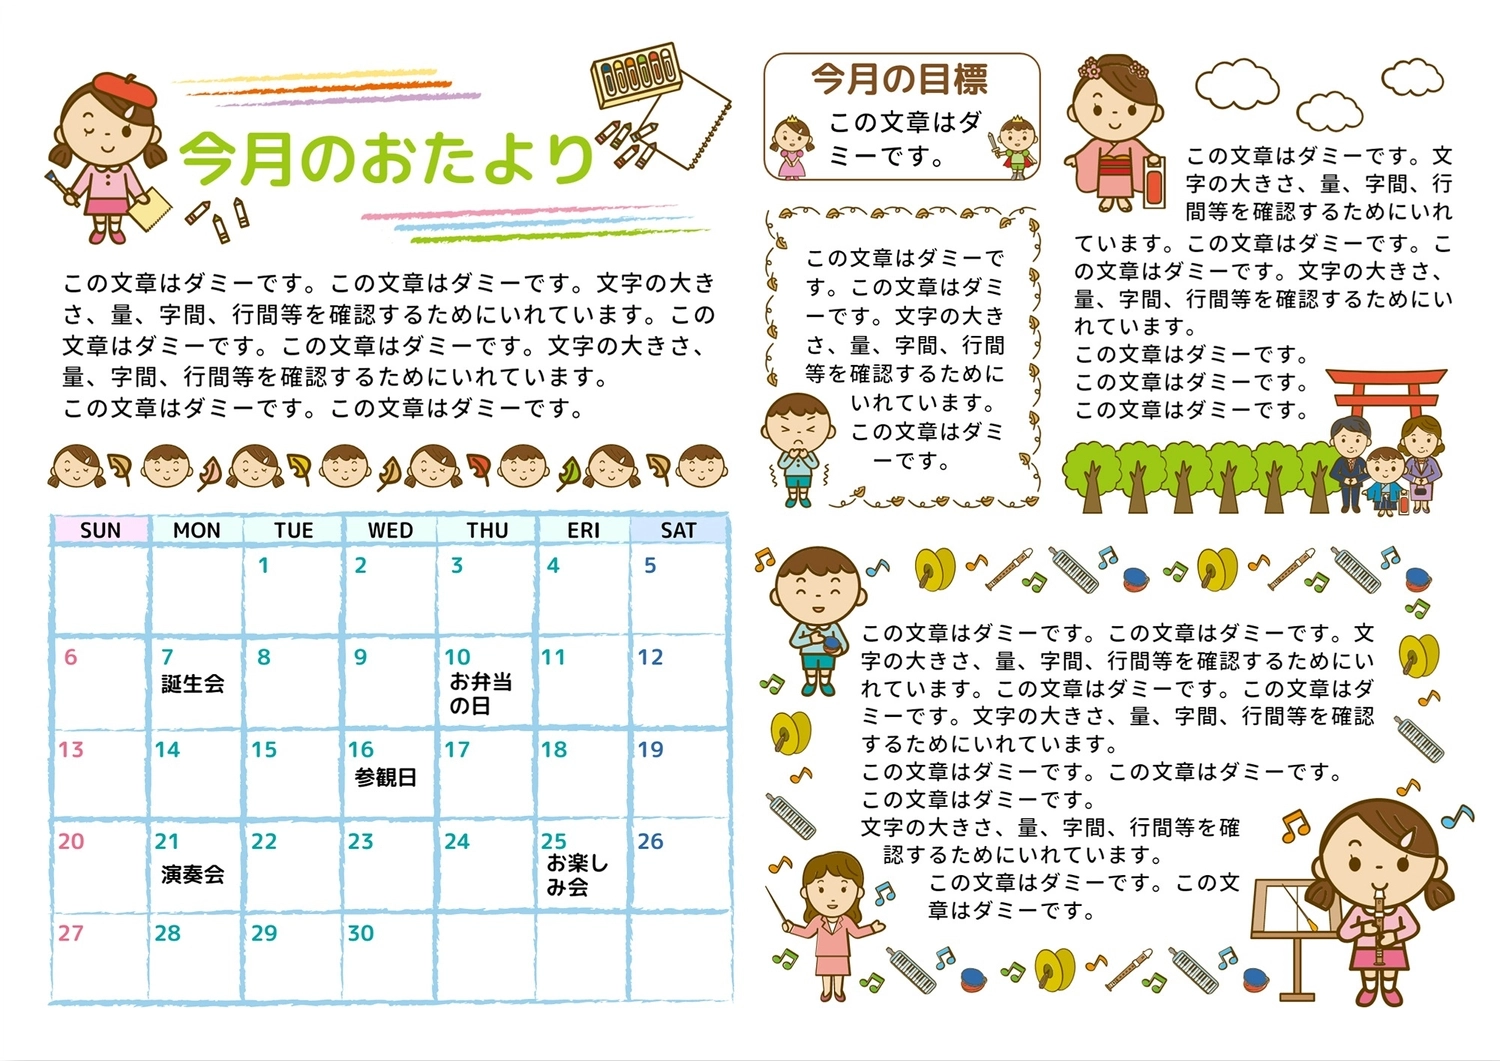 カレンダー付き幼稚園のおたより, calendar, horizontal writing, beside, News template